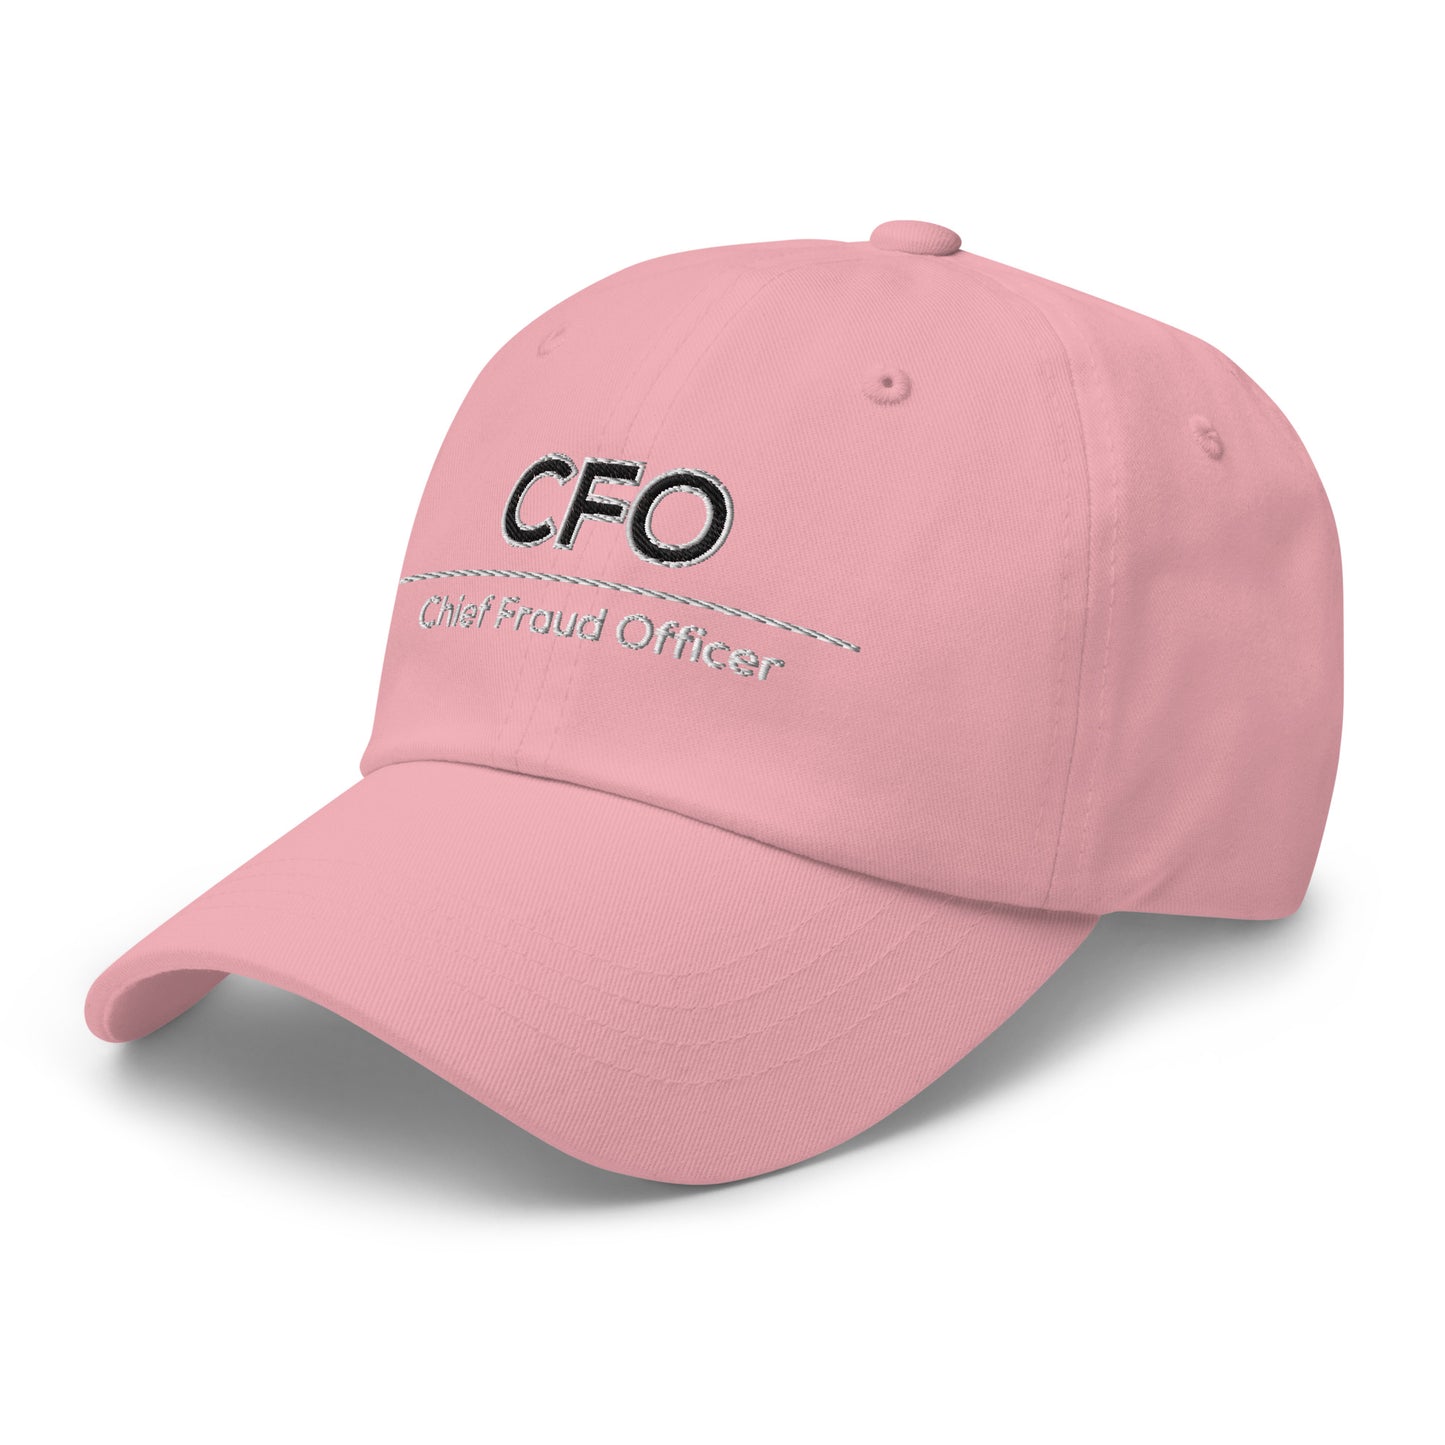 CFO Cap